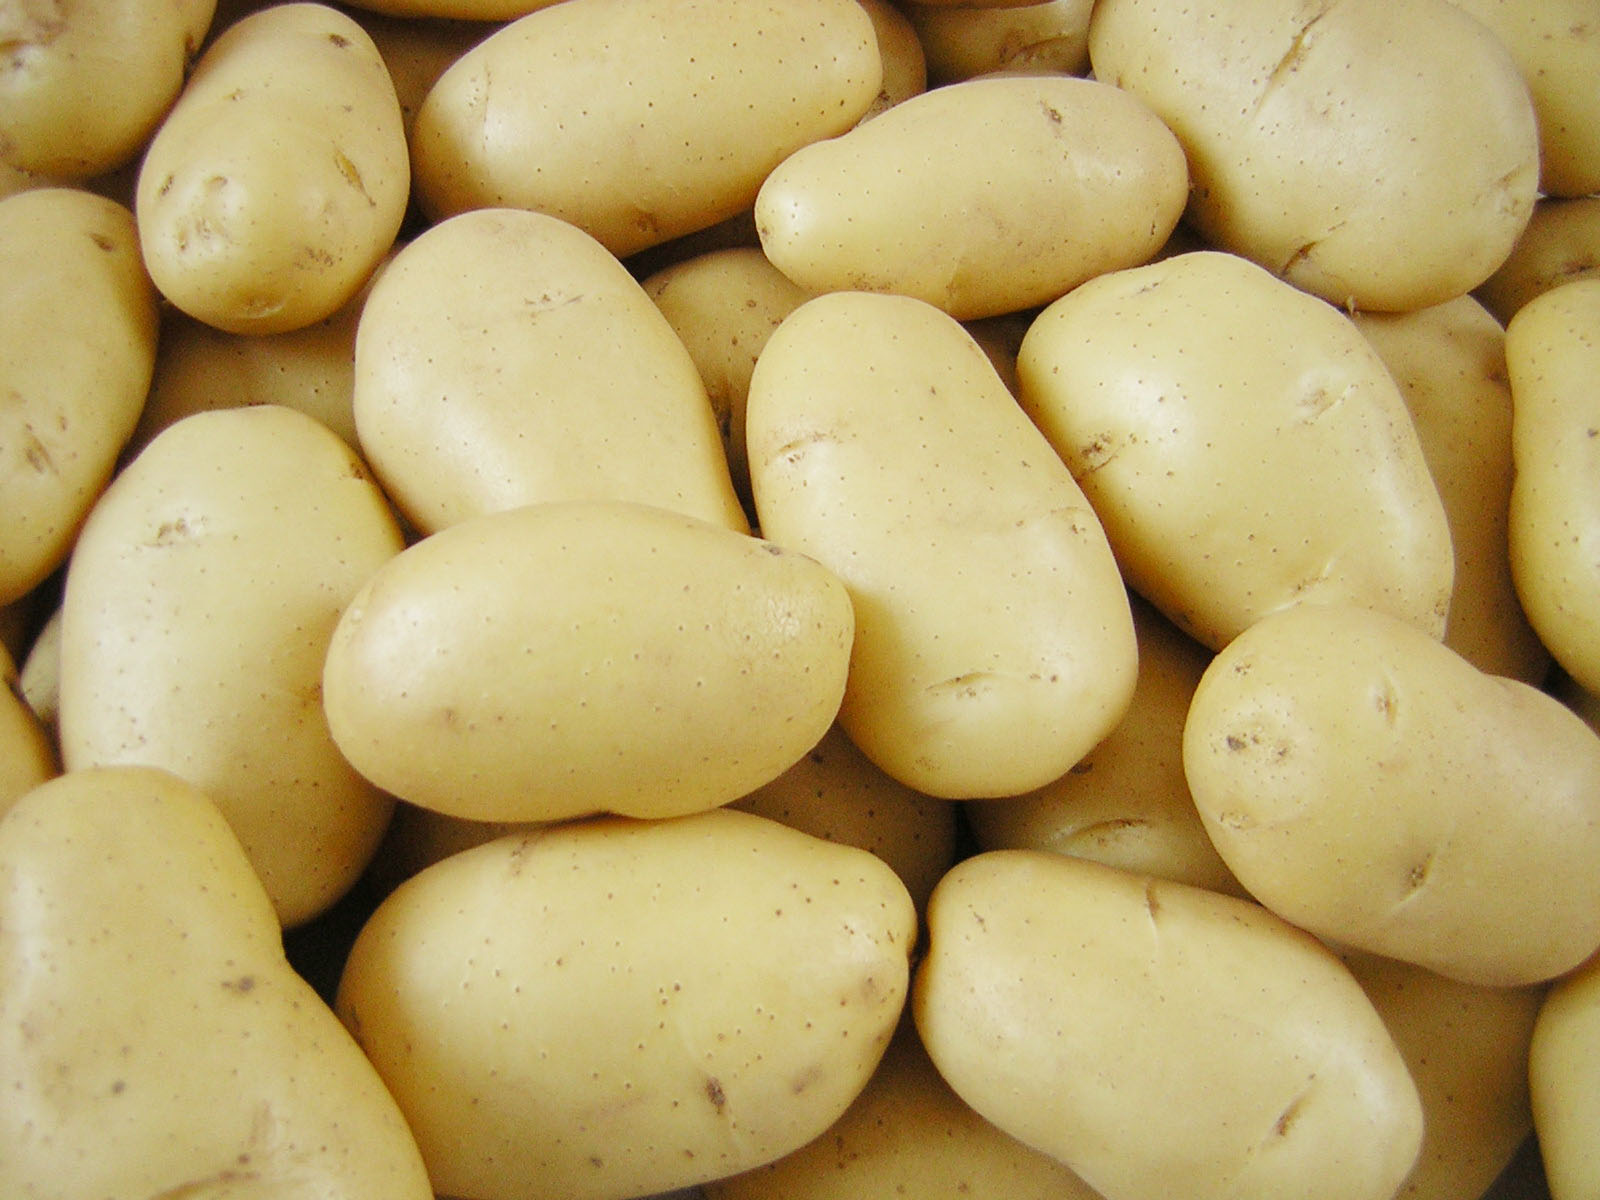 دام برس : دام برس | السورية للتجارة تطرح يومياً في الصالات 15 طناً من البطاطا نوع أول بسعر 3500 ليرة للكيلو